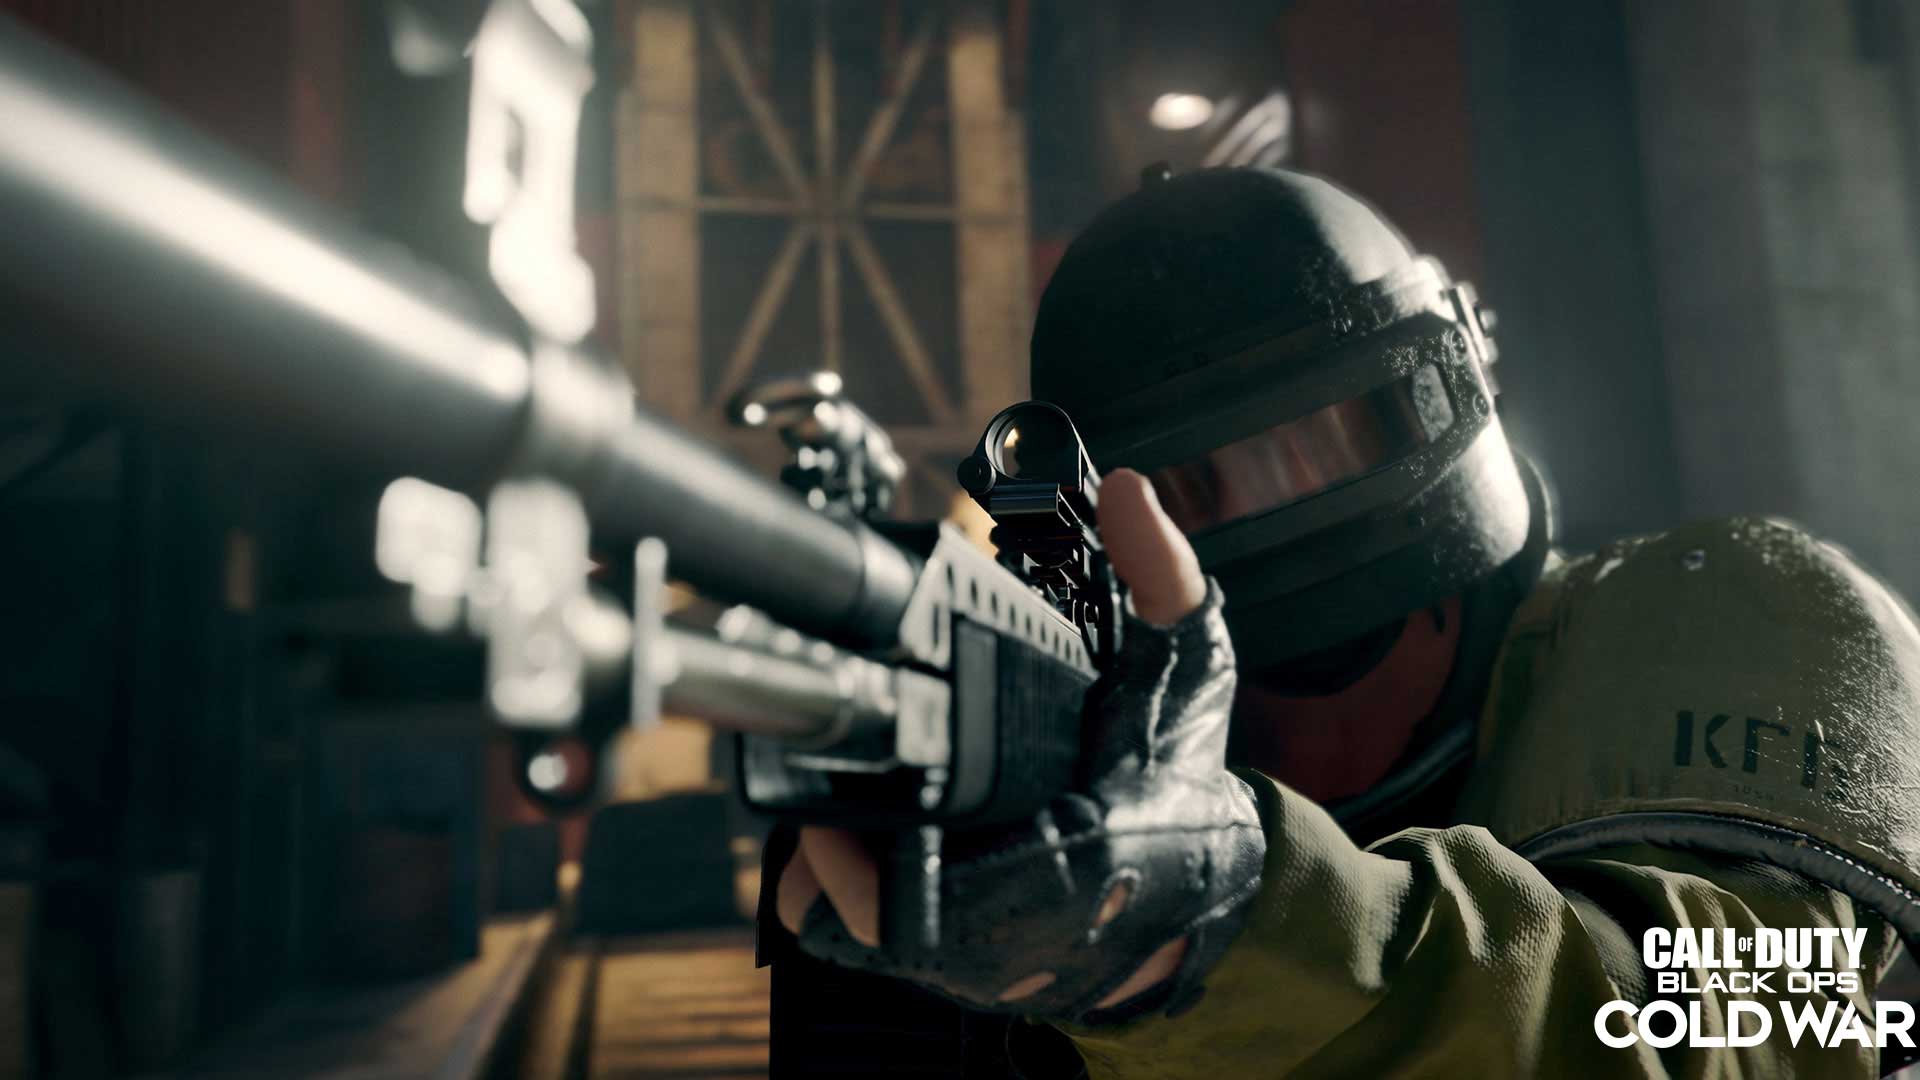 Immagine pubblicata in relazione al seguente contenuto: Call of Duty: Black Ops Cold War | Trailer, screenshots e requisiti per PC | Nome immagine: news31285_Call-of-Duty-Black-Ops-Cold-War-Screenshot_3.jpg